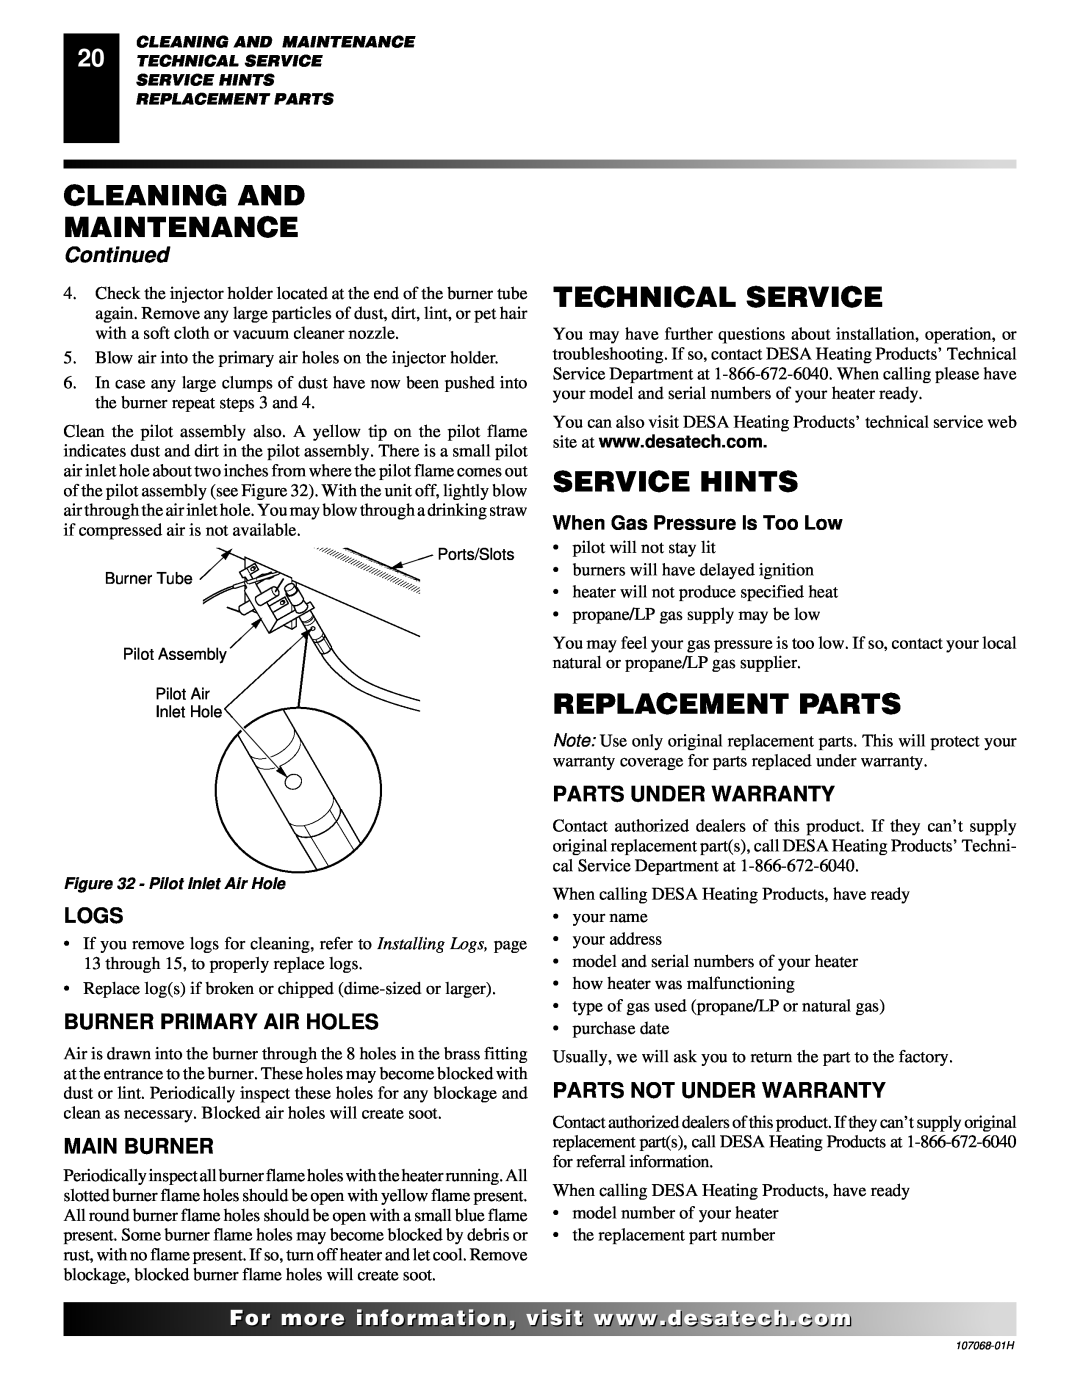 Desa CLD3018PT Technical Service, Service Hints, Replacement Parts, Logs, Parts Under Warranty, Parts Not Under Warranty 